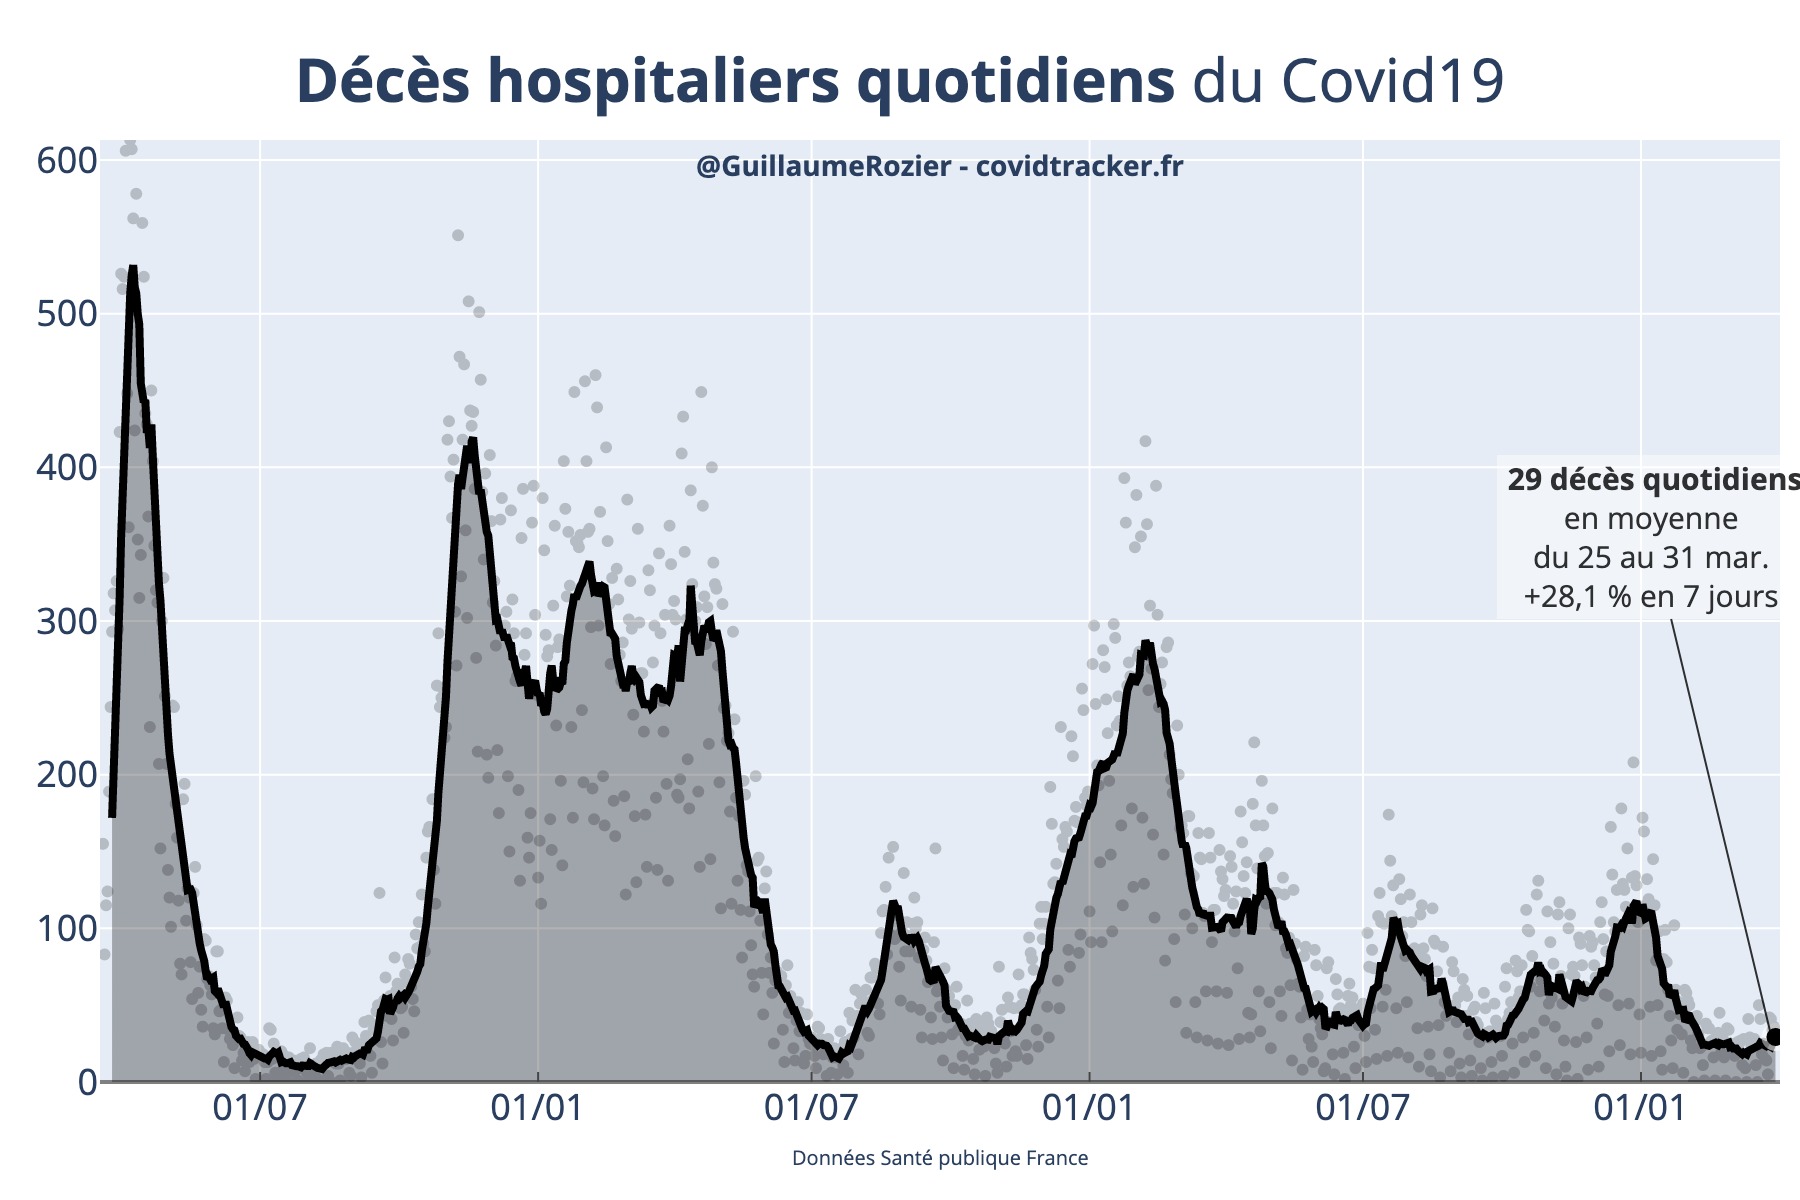 Nombre de décès quotidiens de COVID-19 direct à l'hôpital en France, en moyenne glissante sur 7 jours, et actualisé quotidiennement par Guillaume Rozier (Crédit : Guillaume Rozier pour covidtracker.fr)